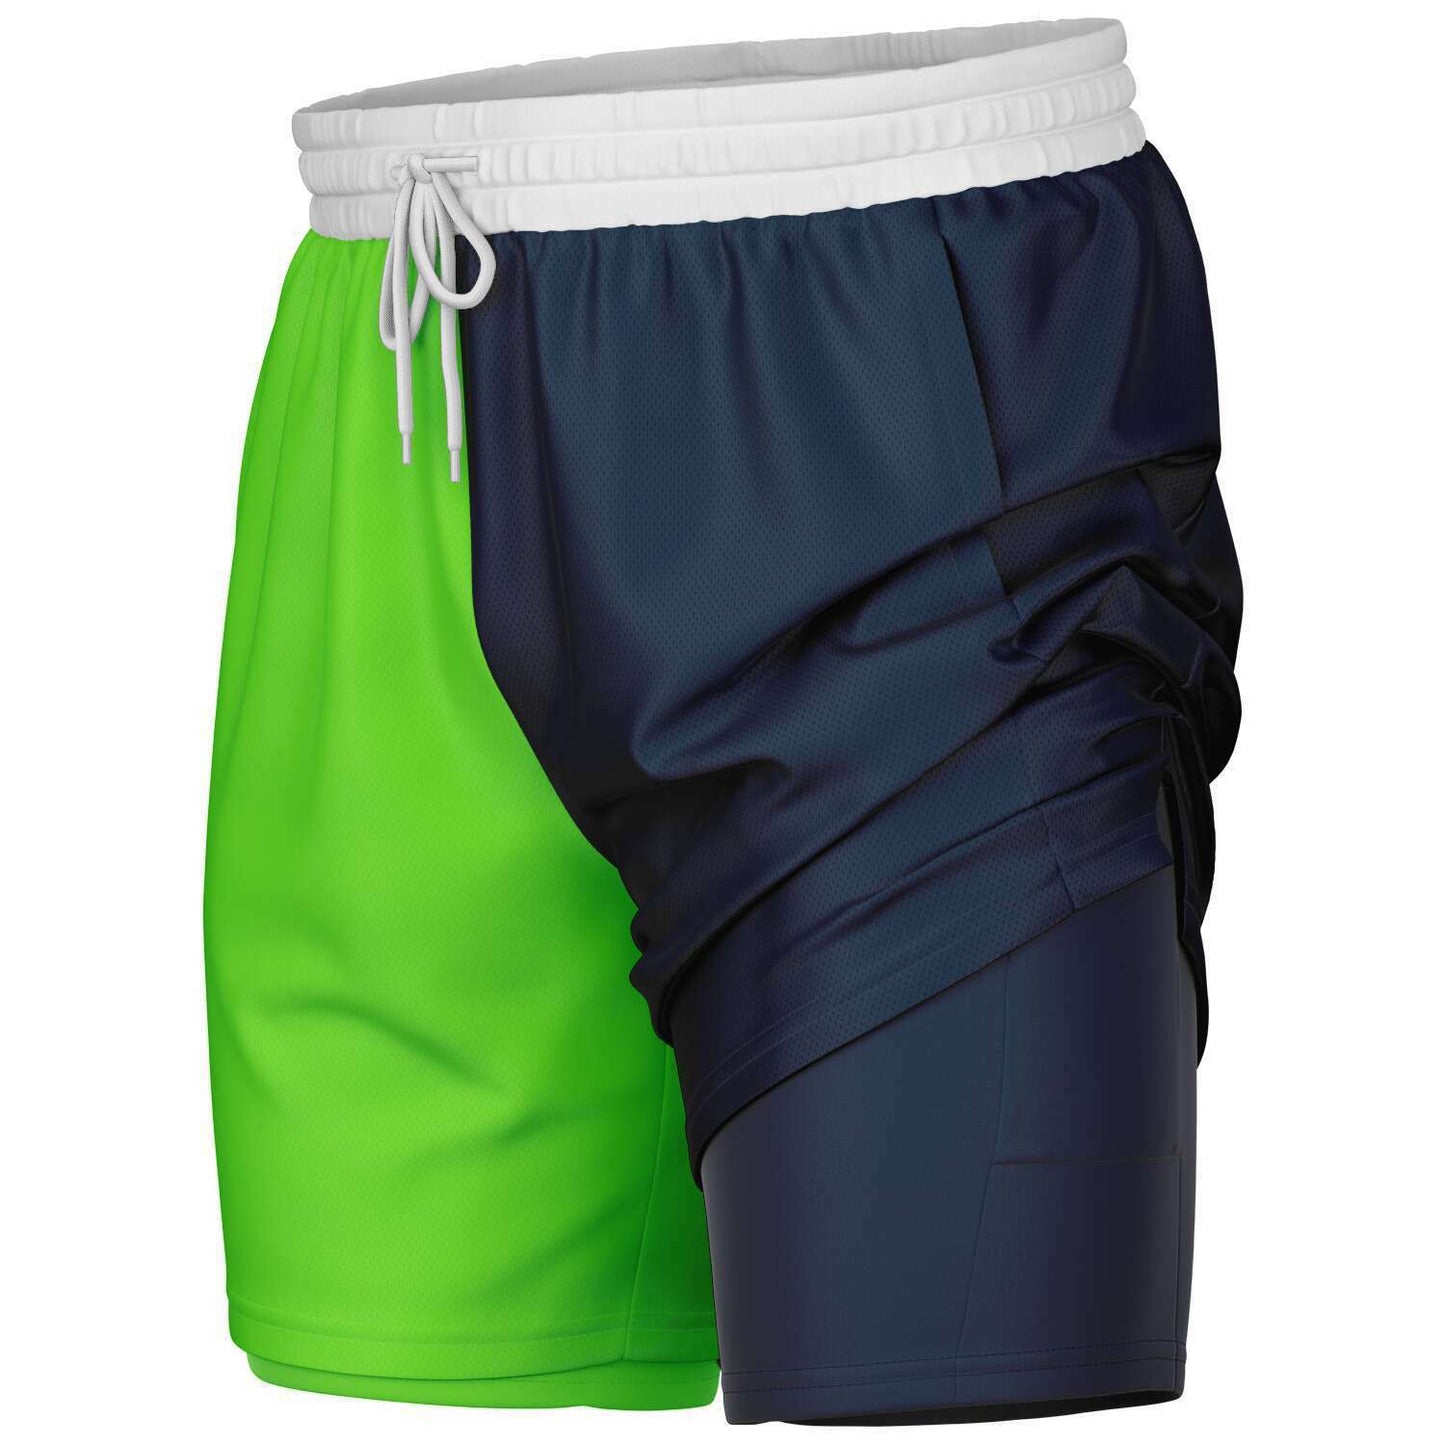 Men's 2-in-1 Active Shorts